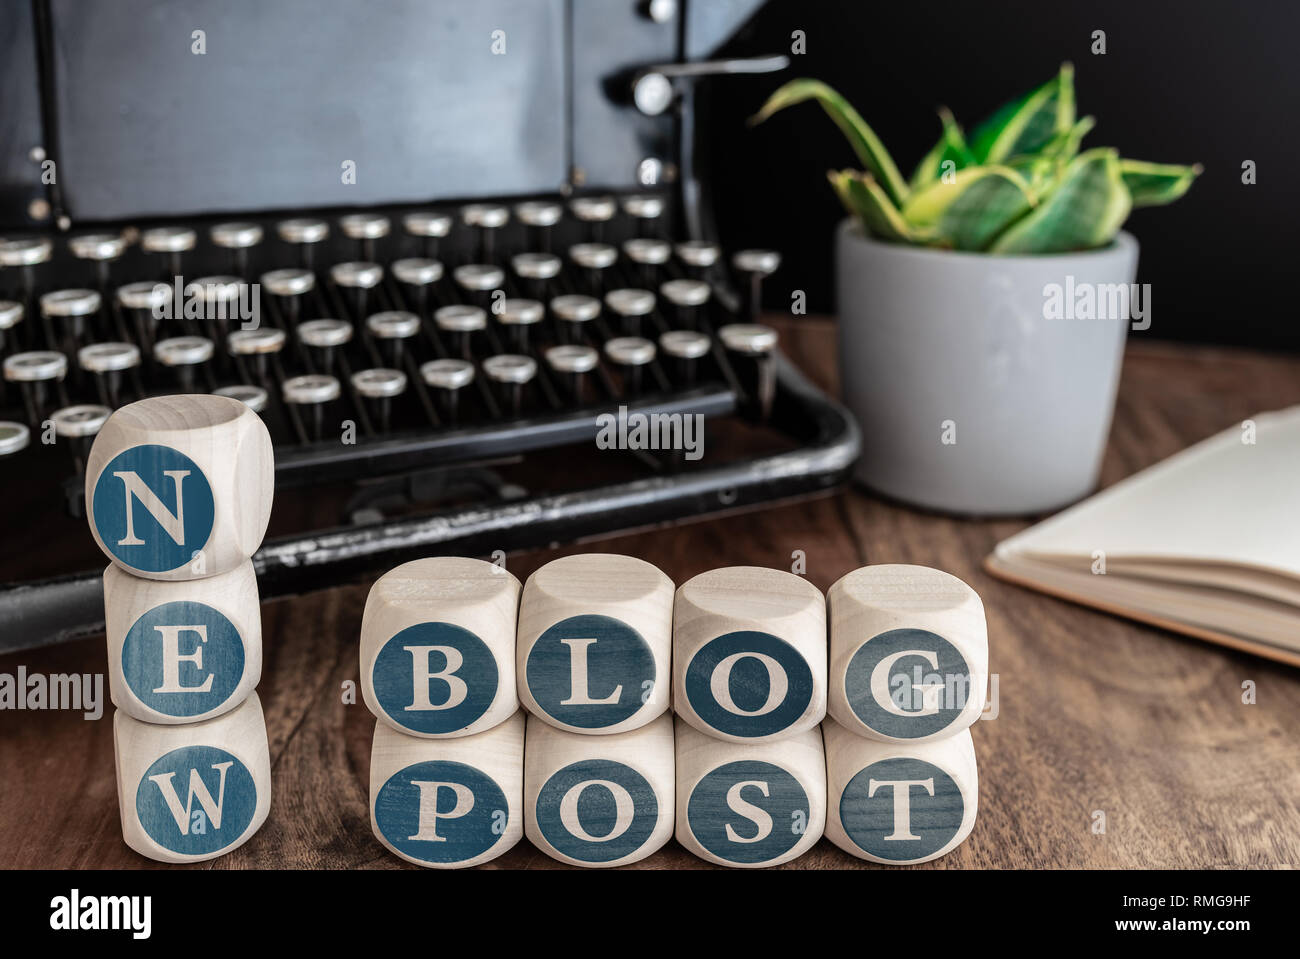 Palabras NUEVO BLOG sobre bloques de madera contra vintage typewriter, planta en maceta y notas sobre la mesa. Foto de stock